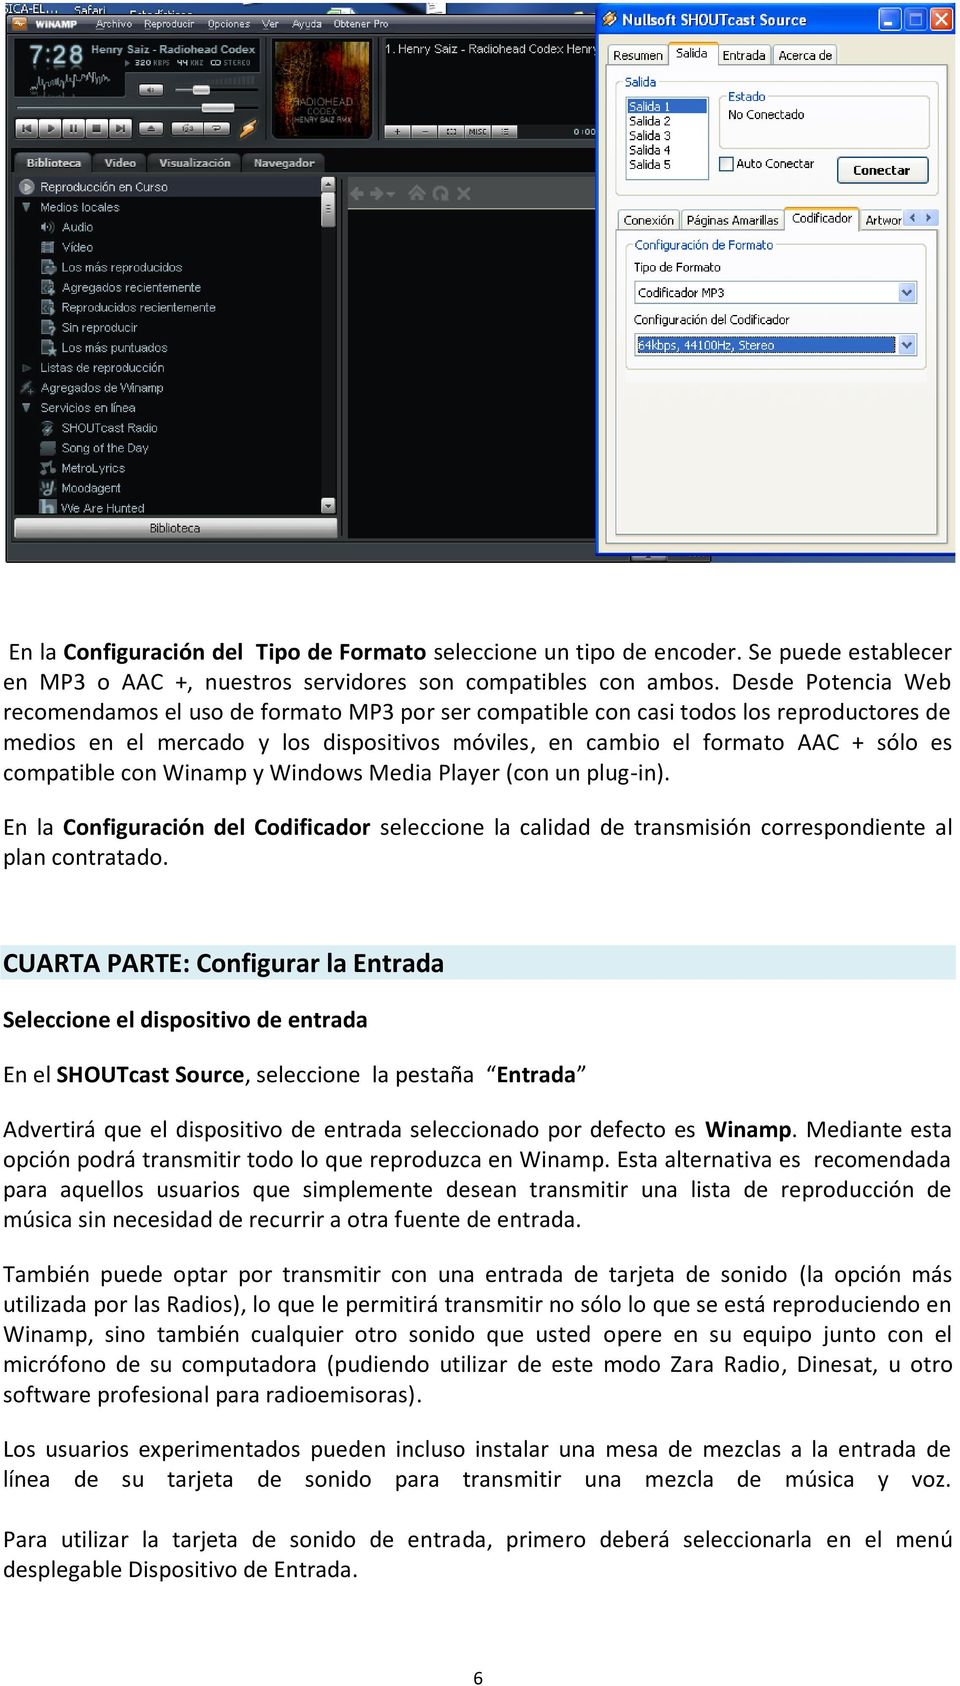 compatible con Winamp y Windows Media Player (con un plug-in). En la Configuración del Codificador seleccione la calidad de transmisión correspondiente al plan contratado.